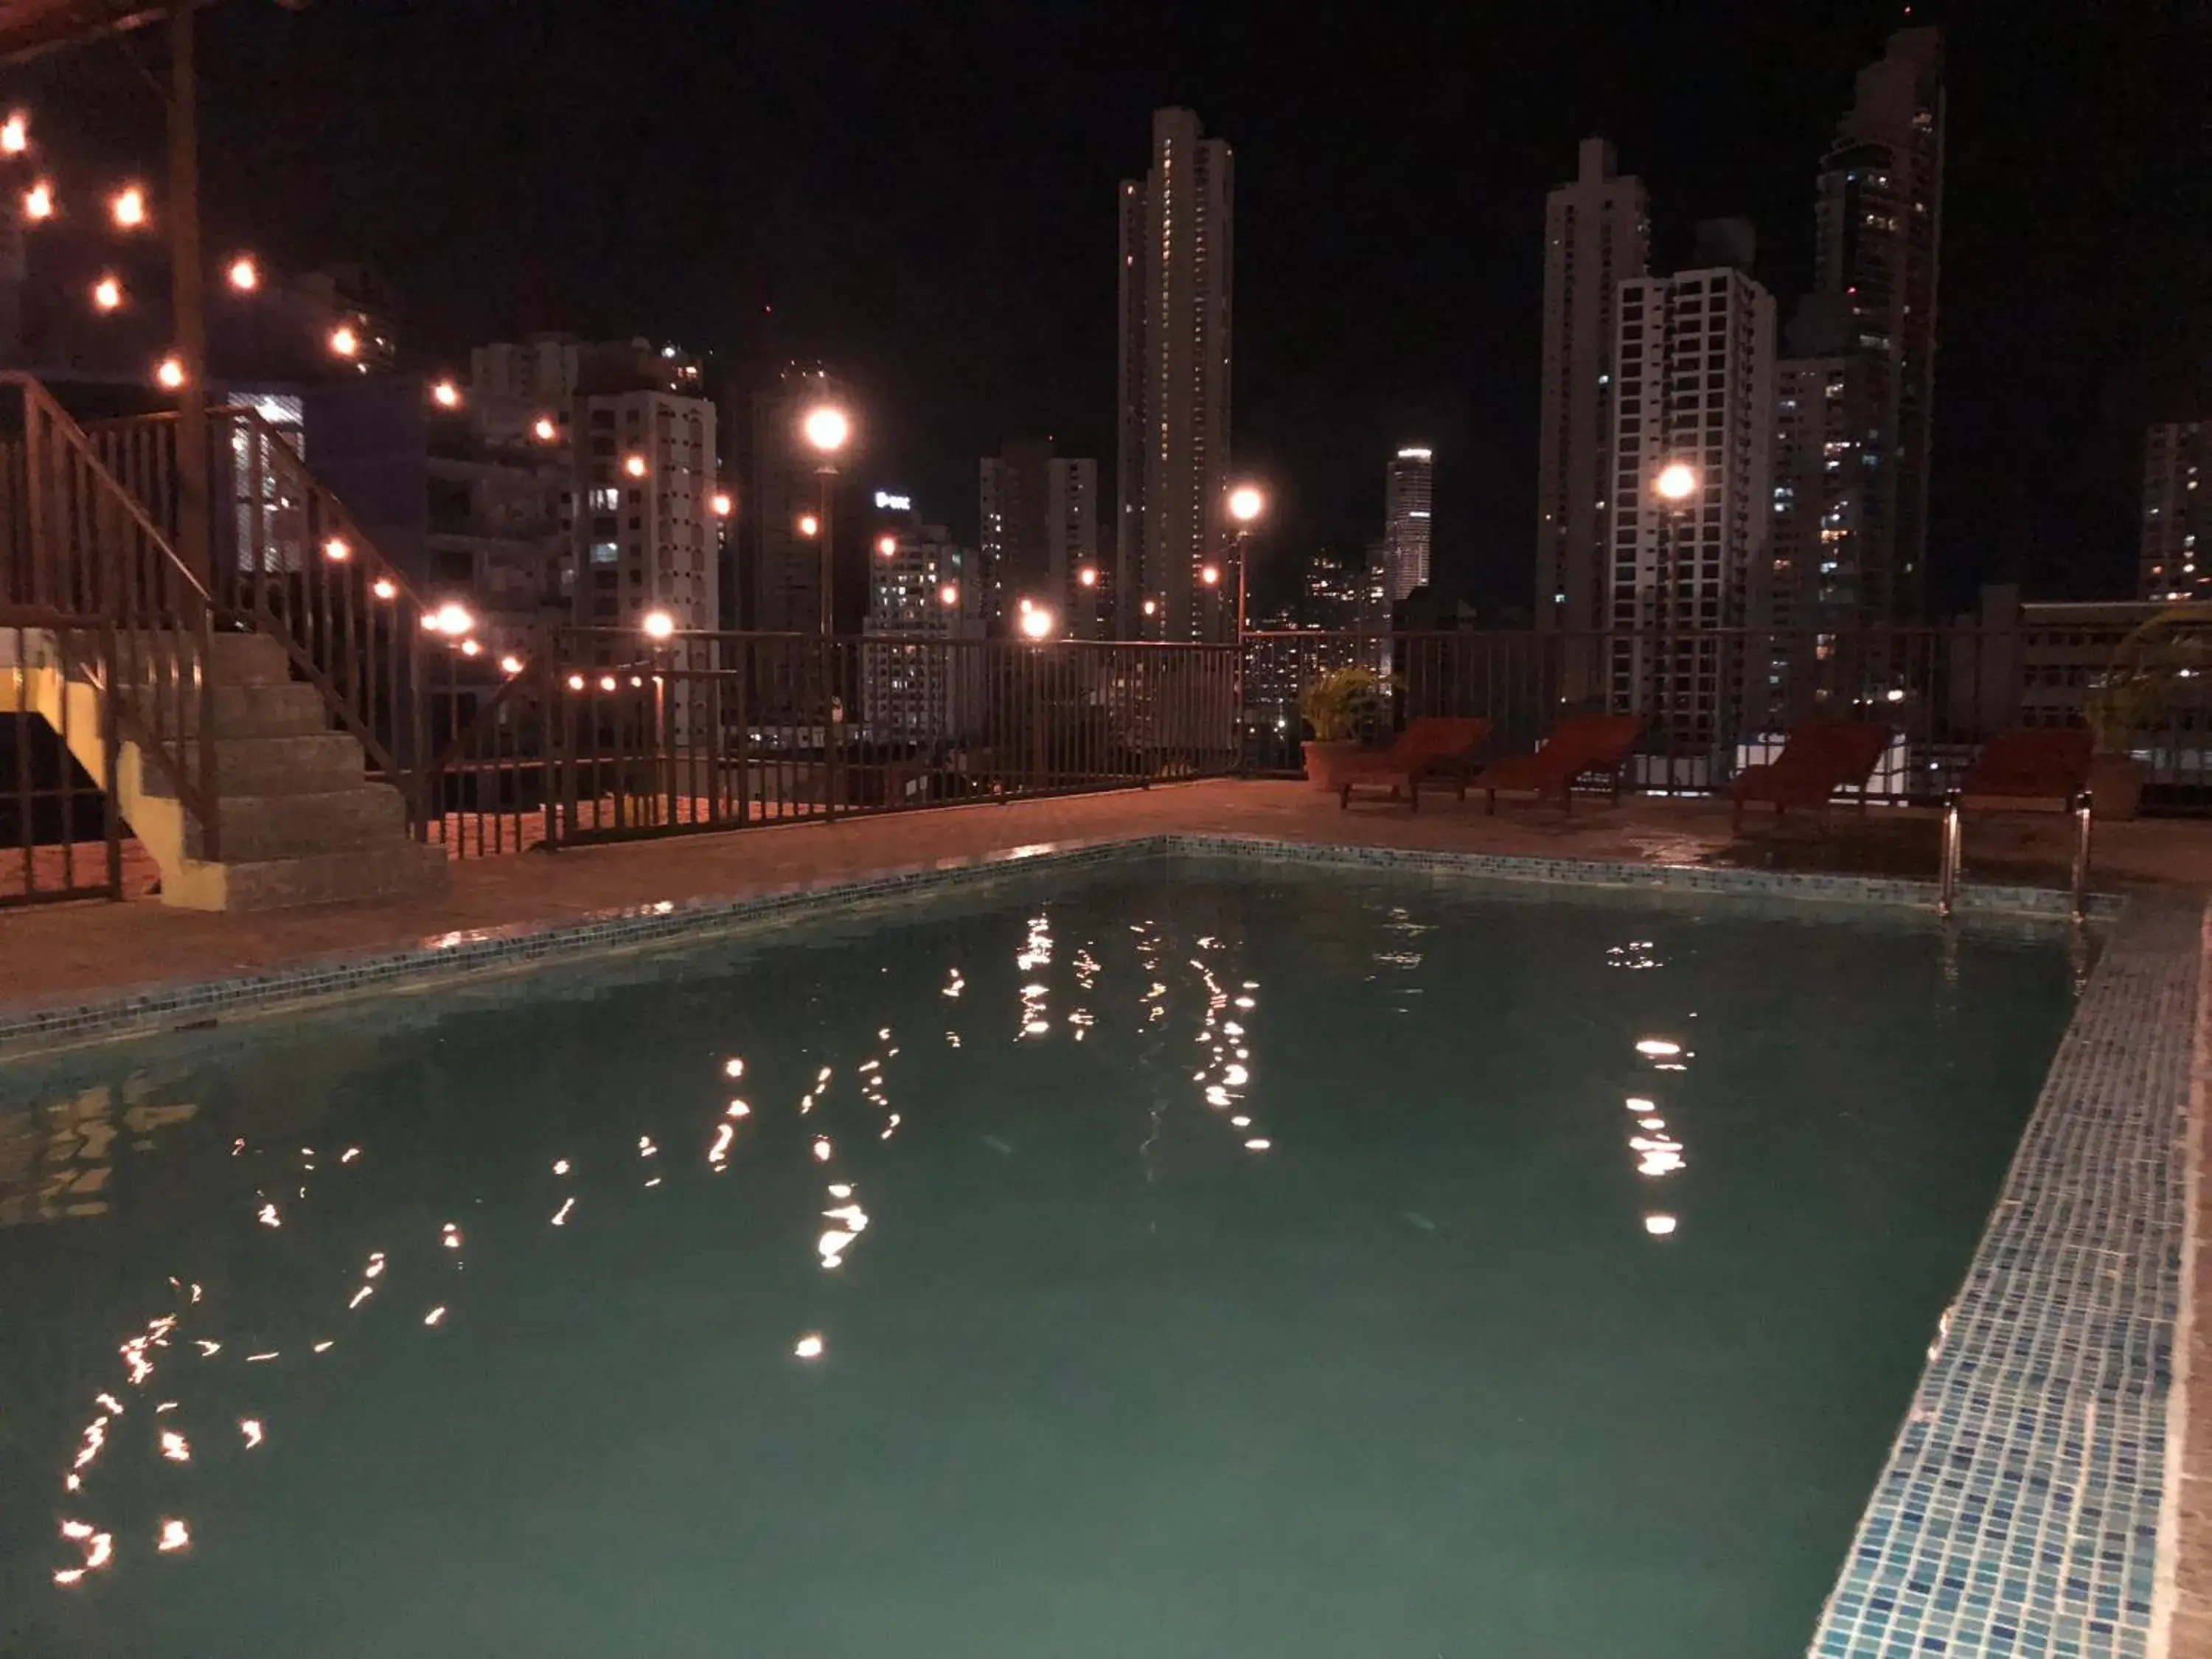 Swimming Pool in Hotel Costa Inn